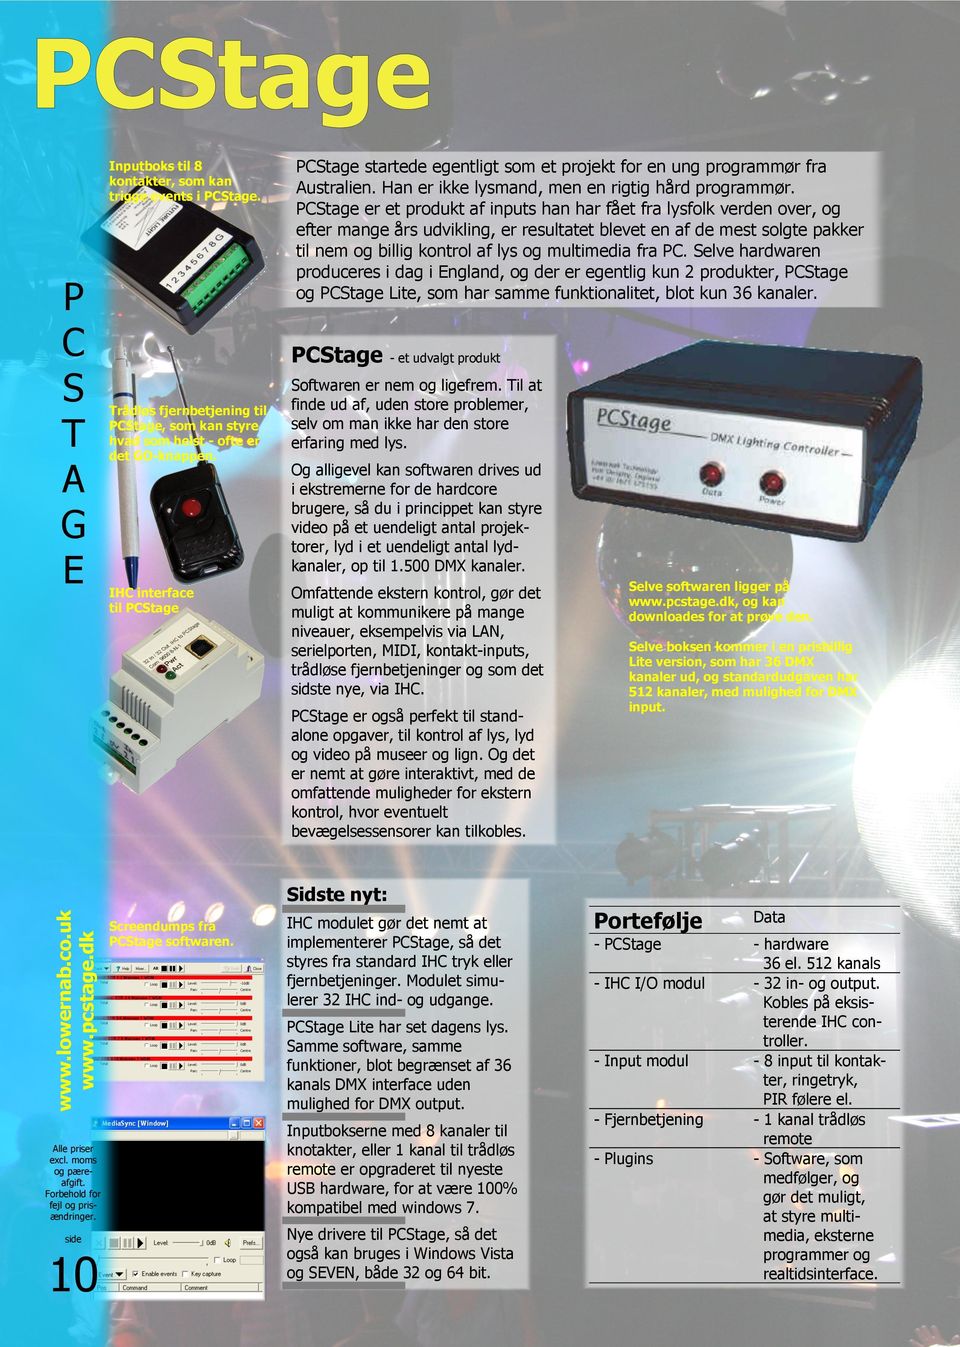 PCStage er et produkt af inputs han har fået fra lysfolk verden over, og efter mange års udvikling, er resultatet blevet en af de mest solgte pakker til nem og billig kontrol af lys og multimedia fra